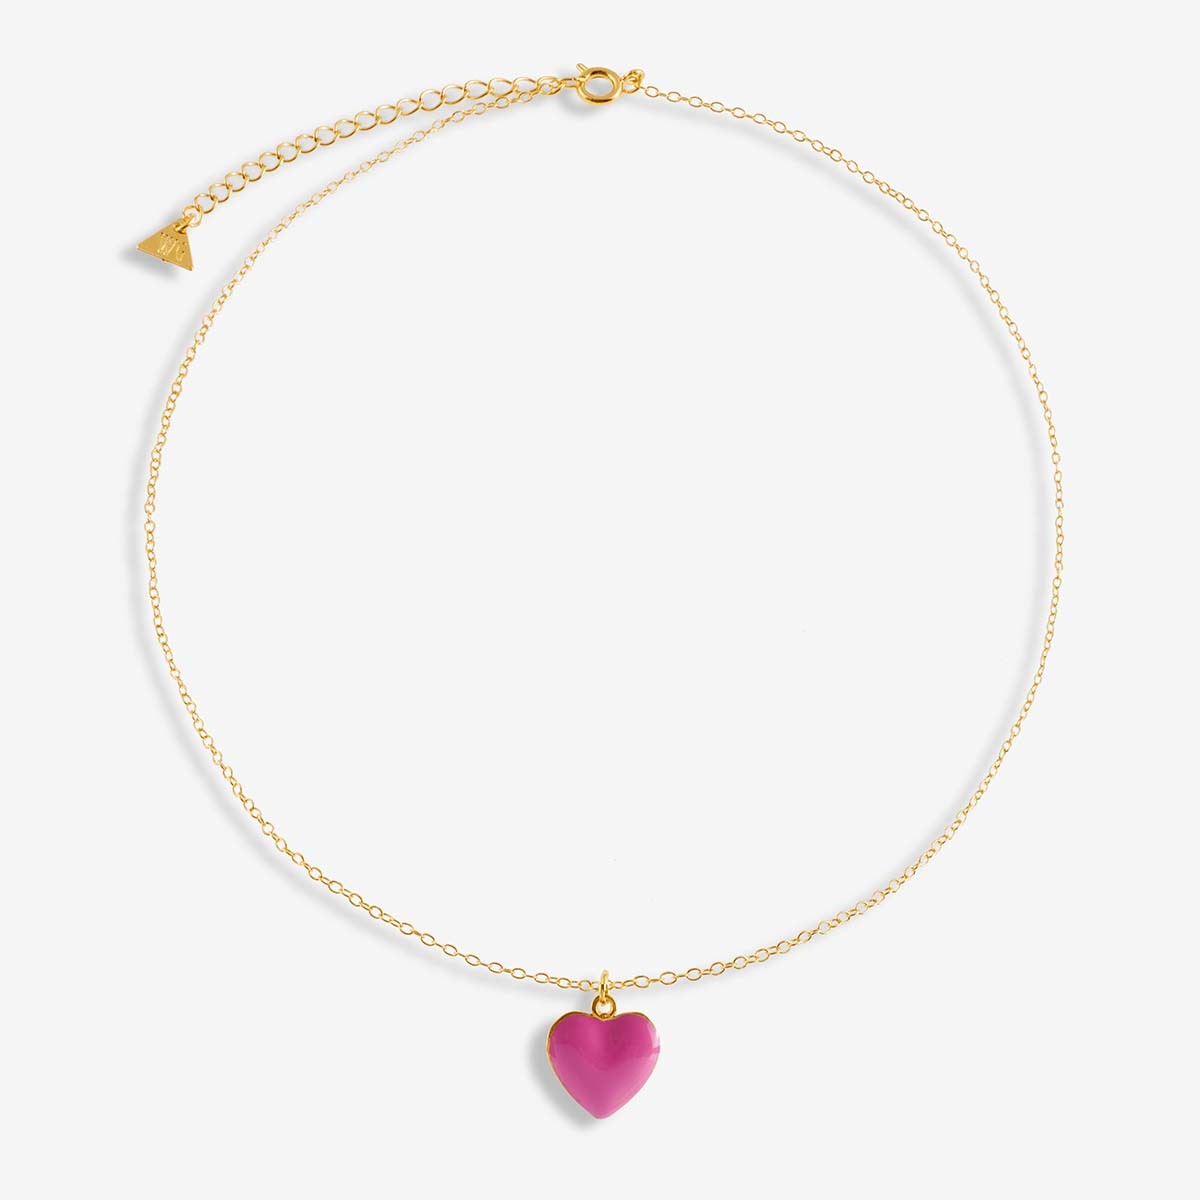 I Love Me Pink - Halskette - 18k vergoldet